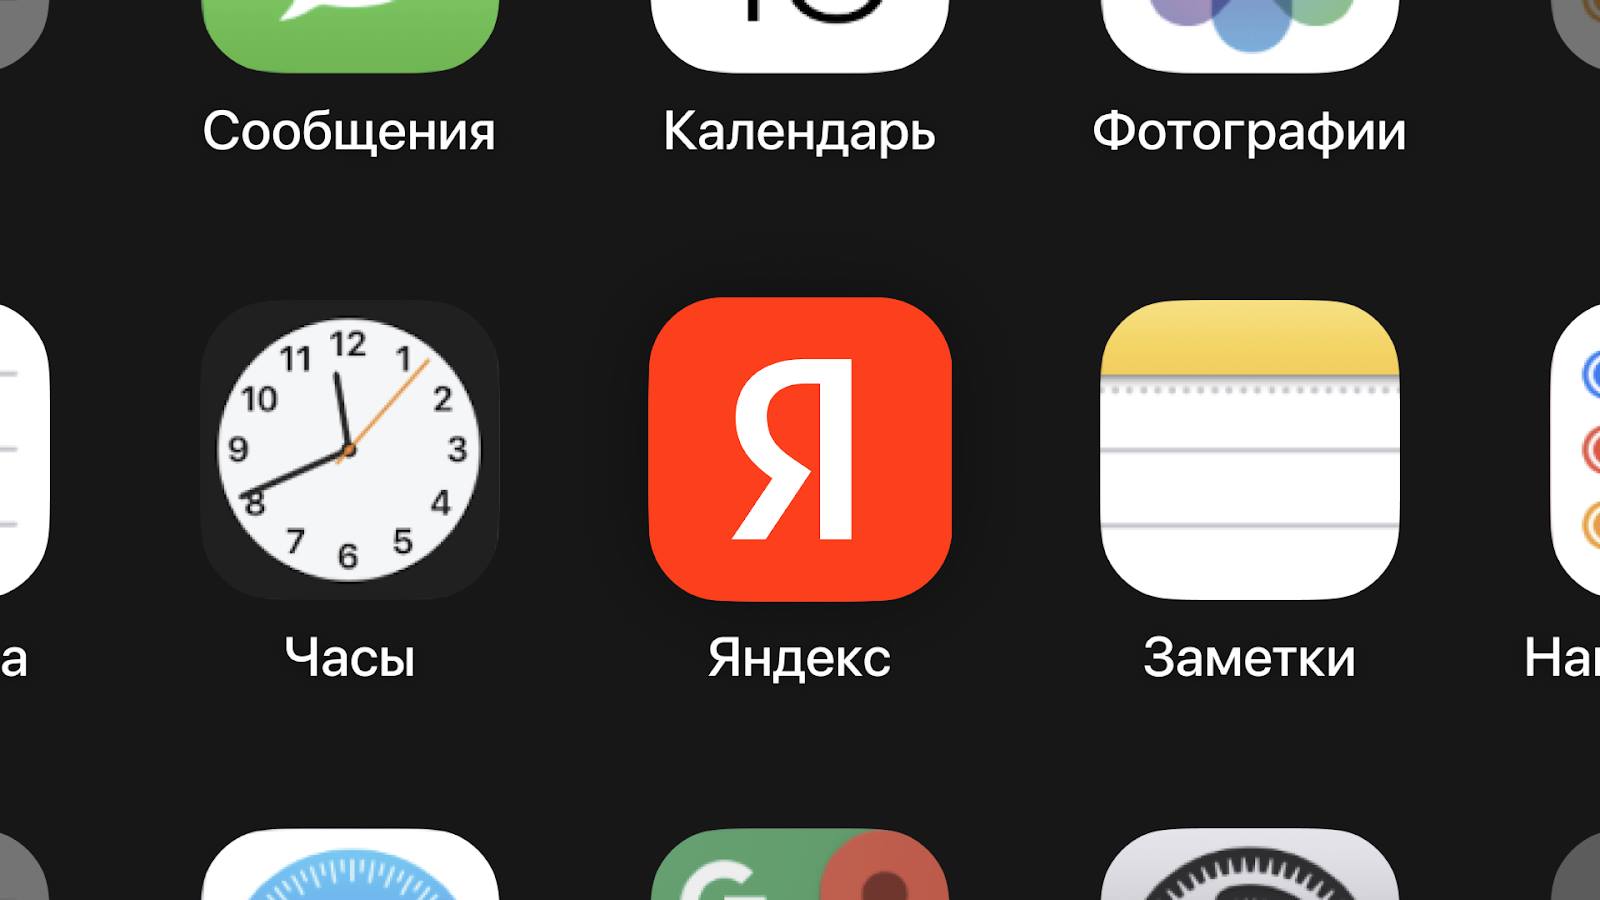 Яндекс выпустил виджеты своих сервисов для экрана блокировки в iOS 16